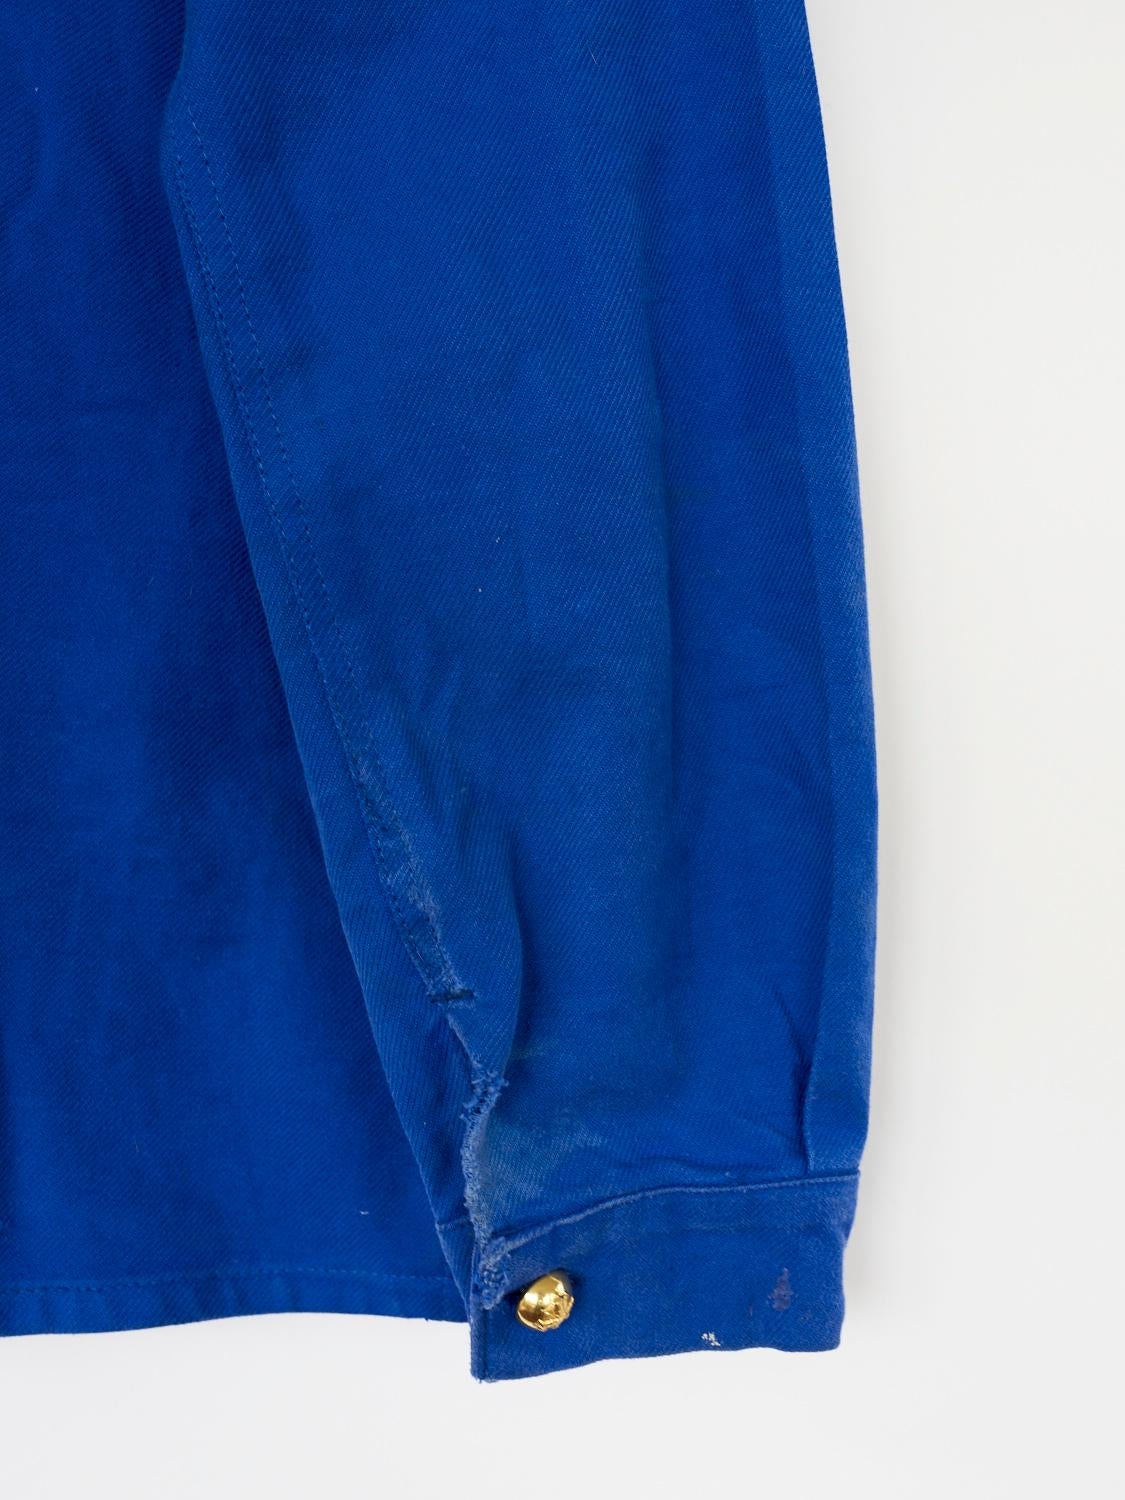 Embellished Jacket Cobalt Blue Tweed Gold Button 
J Dauphin 1